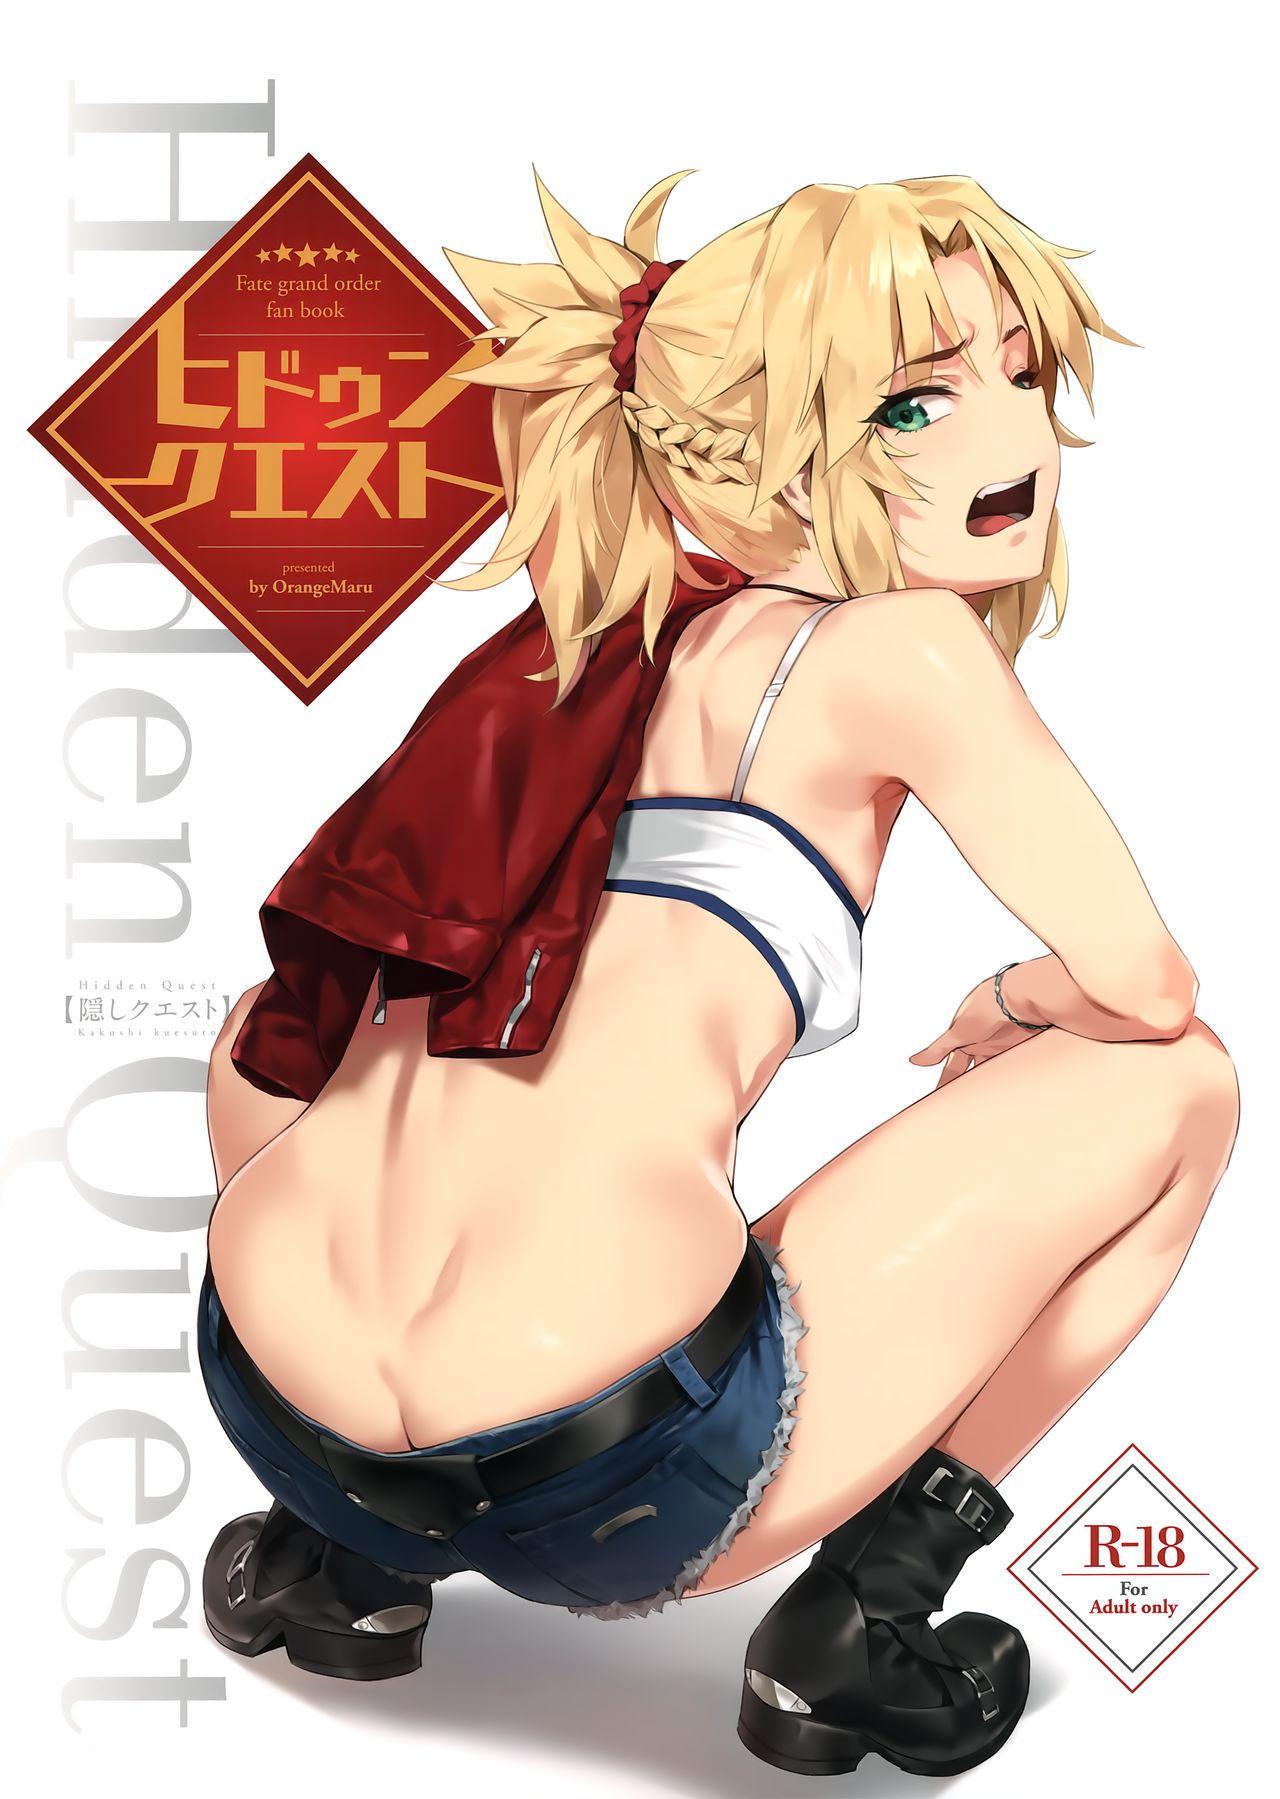 Humiliation Hidden Quest + OrangeMaru Special 08 - Fate grand order Tight Ass - Picture 1